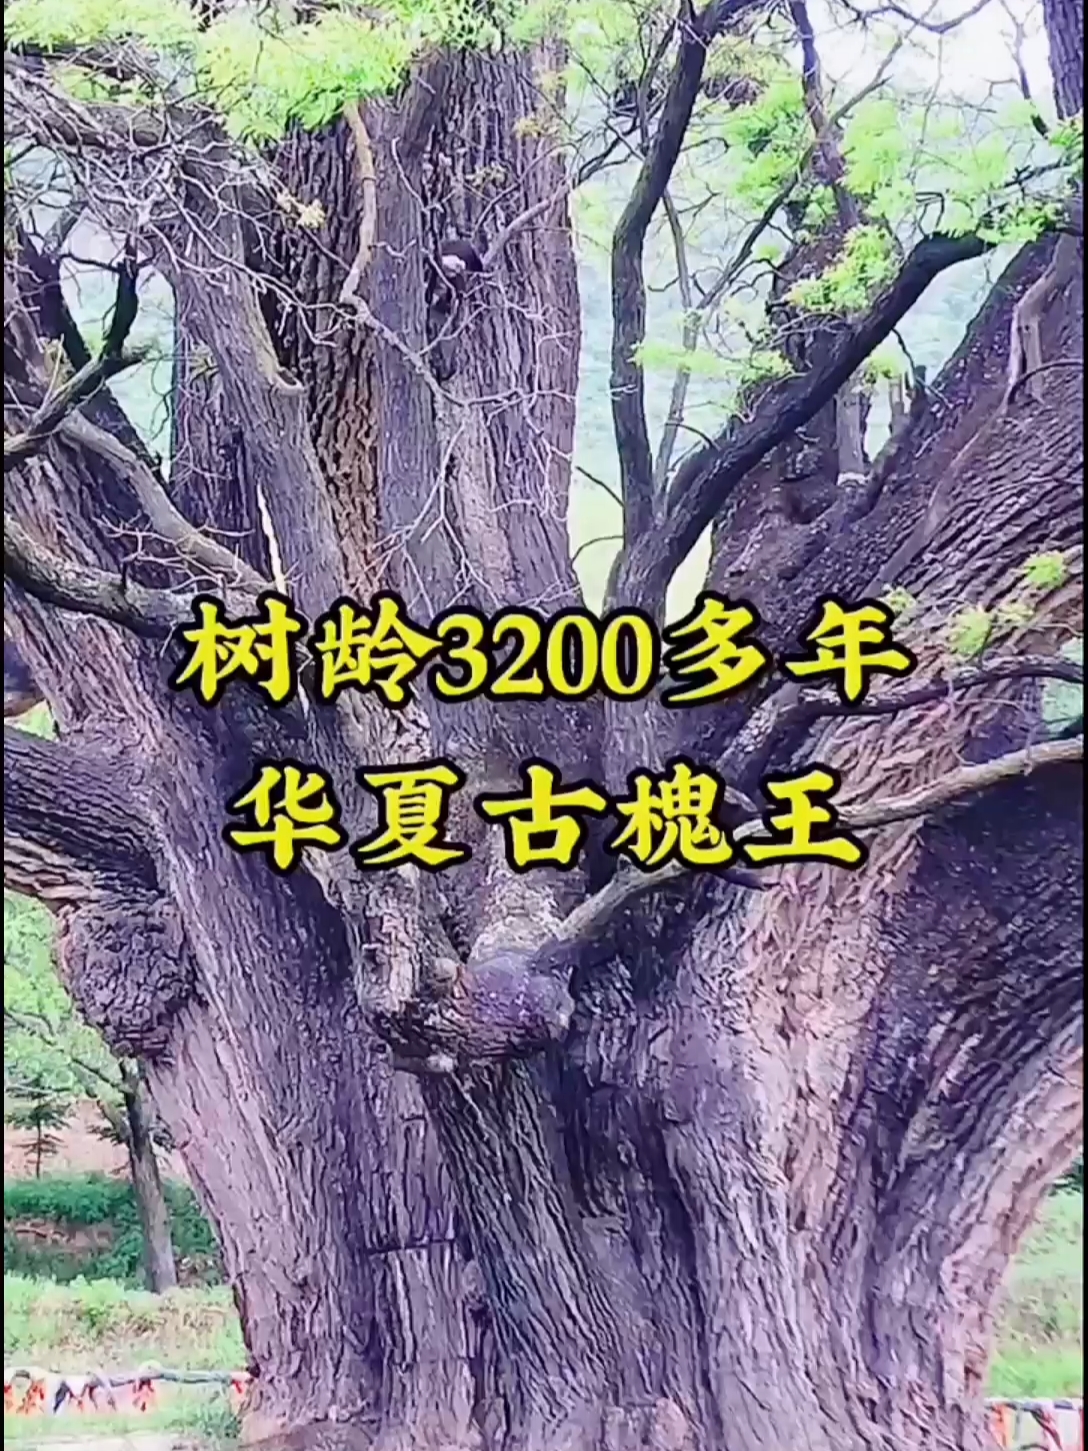 一棵树龄3200余年多古树，宣传唐朝大将尉迟敬德曾在此栓马。#华夏古槐王 #千年古树 #甘肃崇信